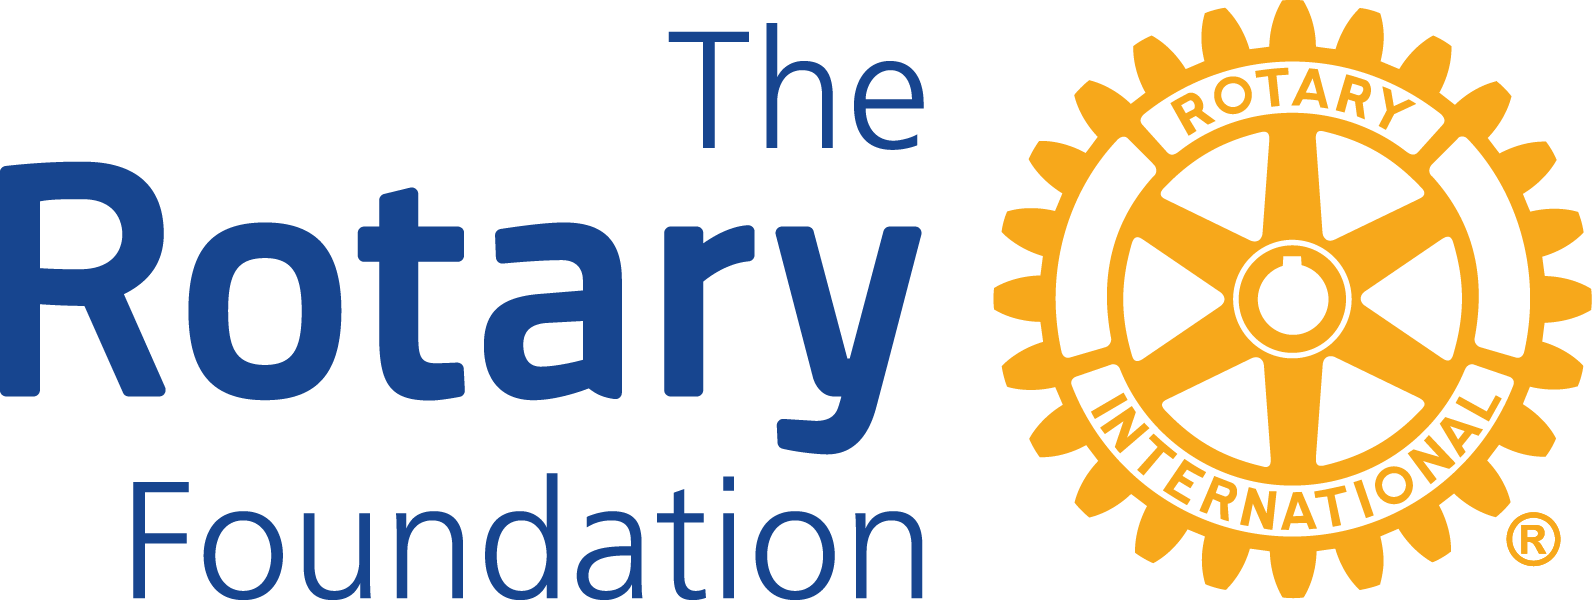 The Rotary Foundation logo